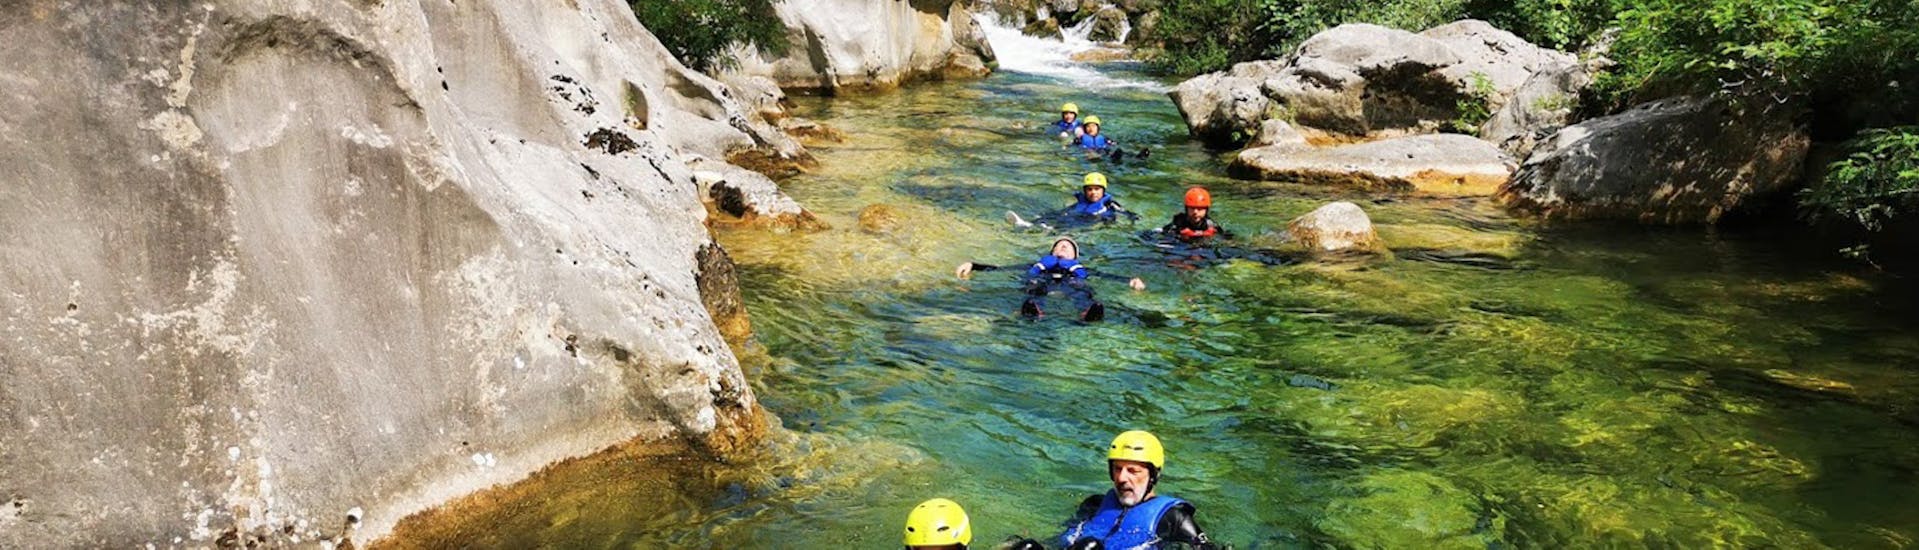 Un gruppo di persone in acqua durante il Private Basic Canyoning nel fiume Cetina con Iris Adventures Dalmatia.